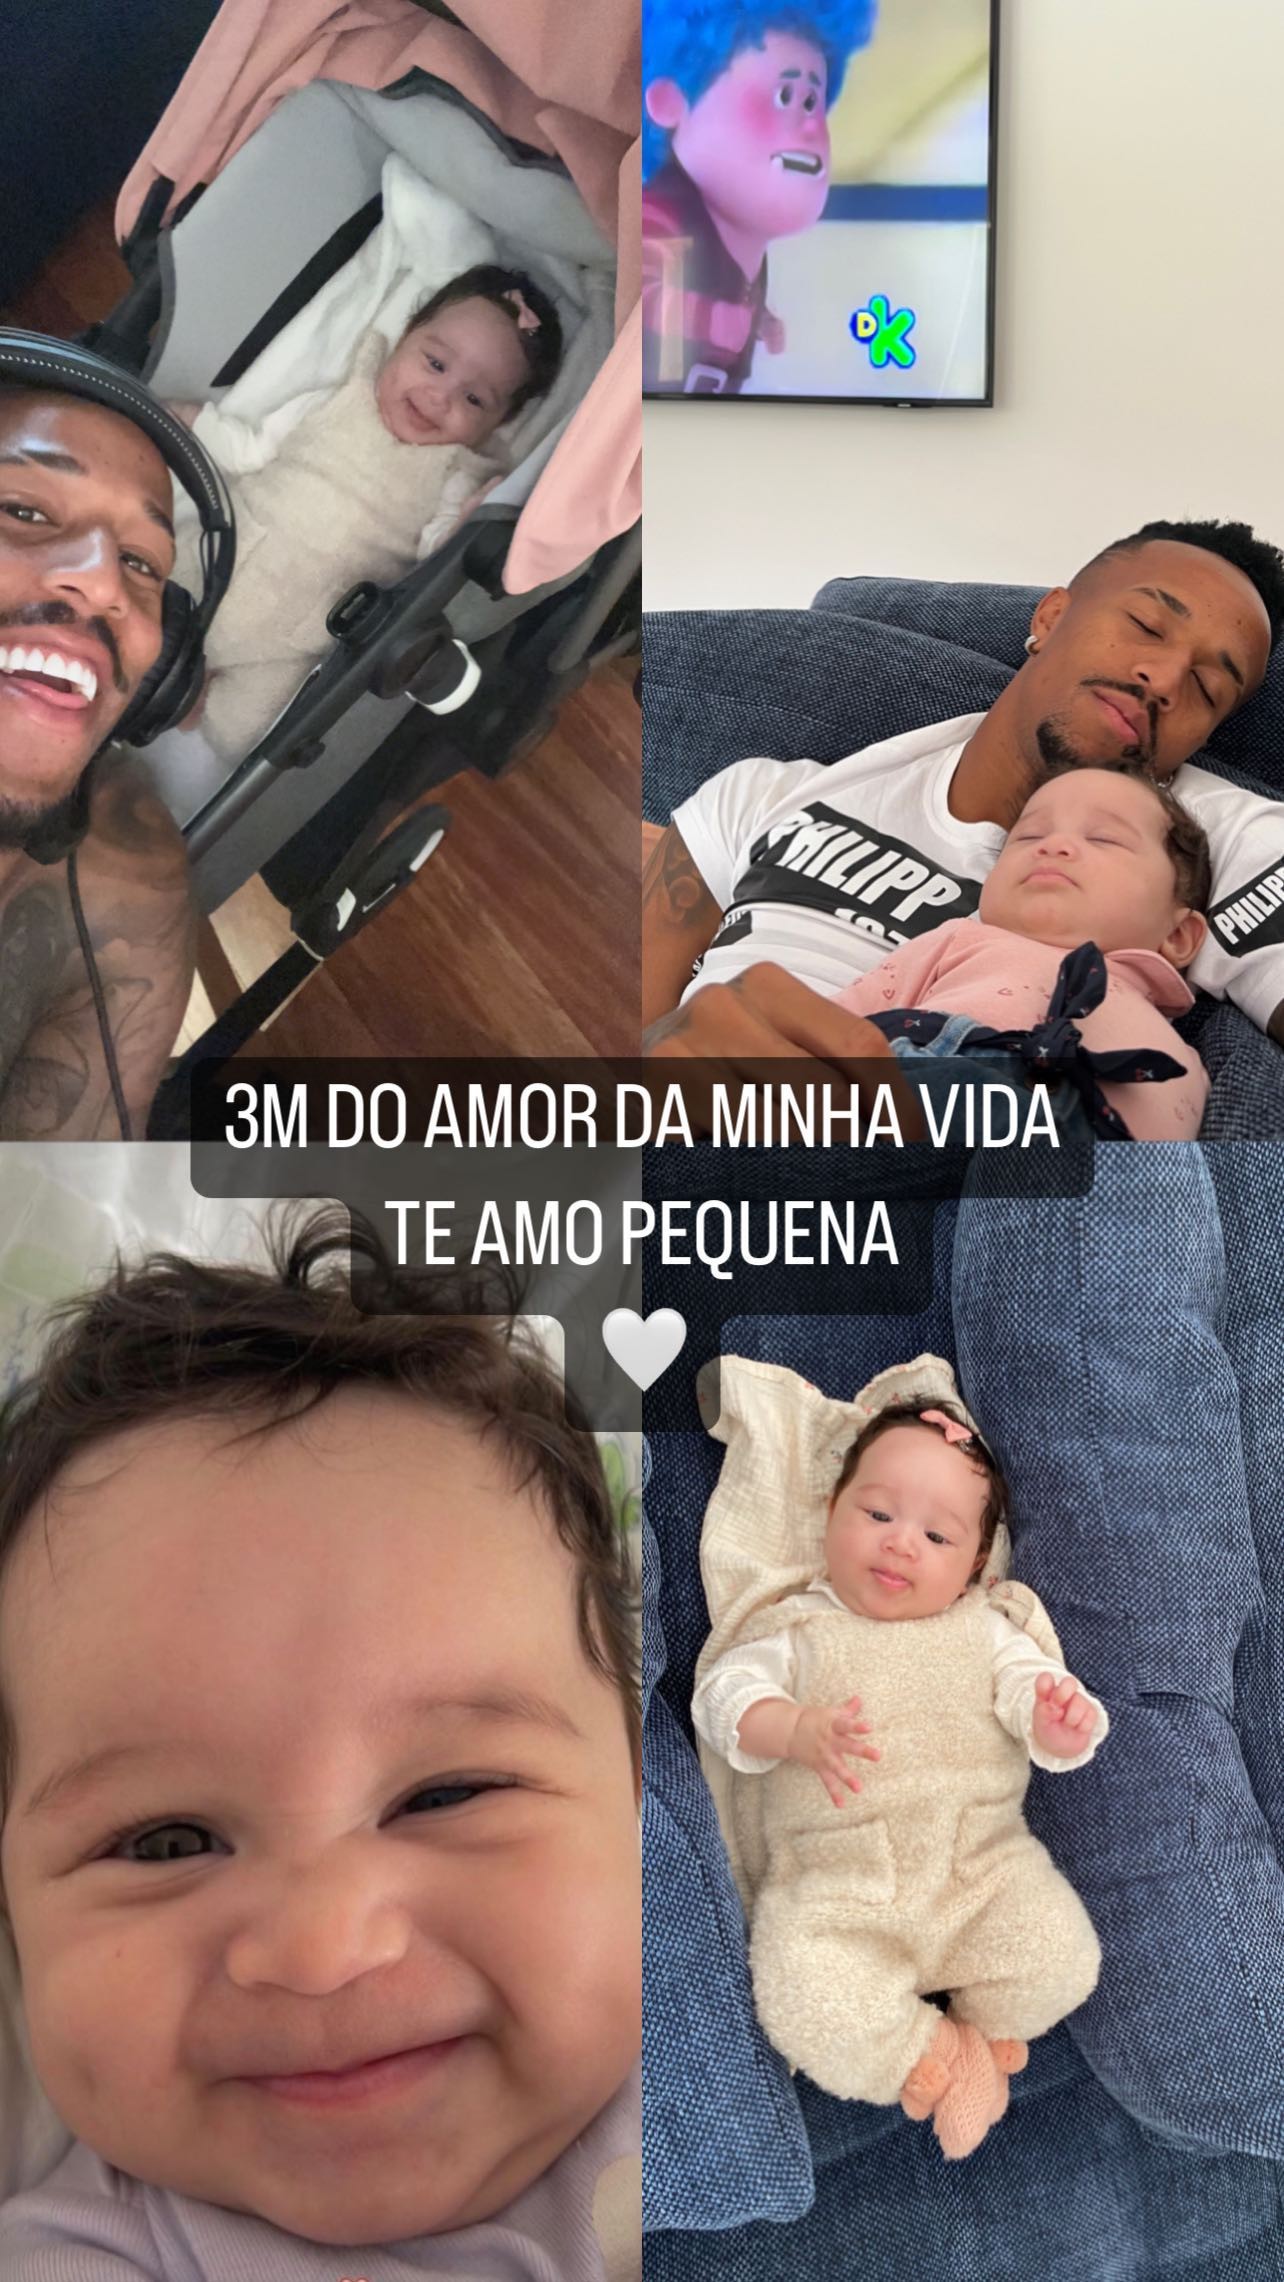 Eder Militão celebra 3 meses da filha (Foto: Reprodução Instagram)